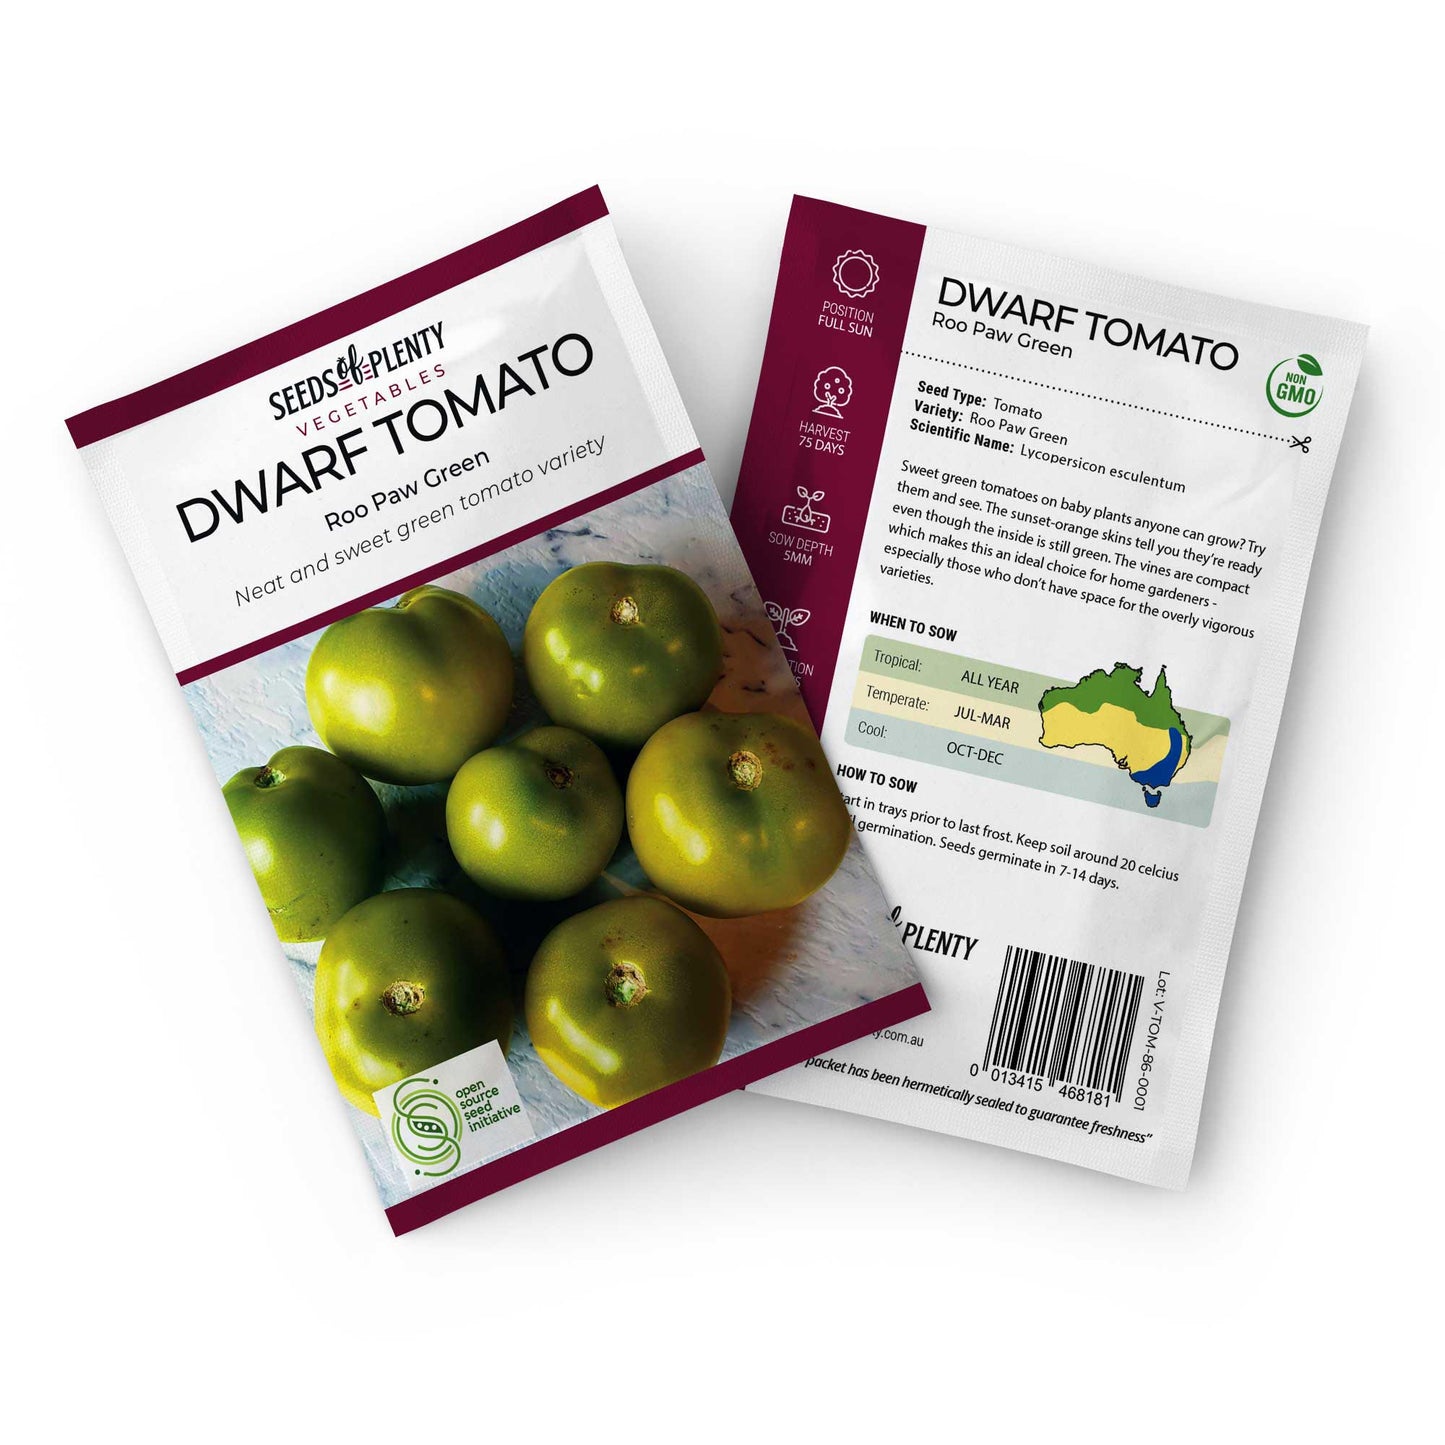 DWARF TOMATO - Kangaroo Paw Green Default Title